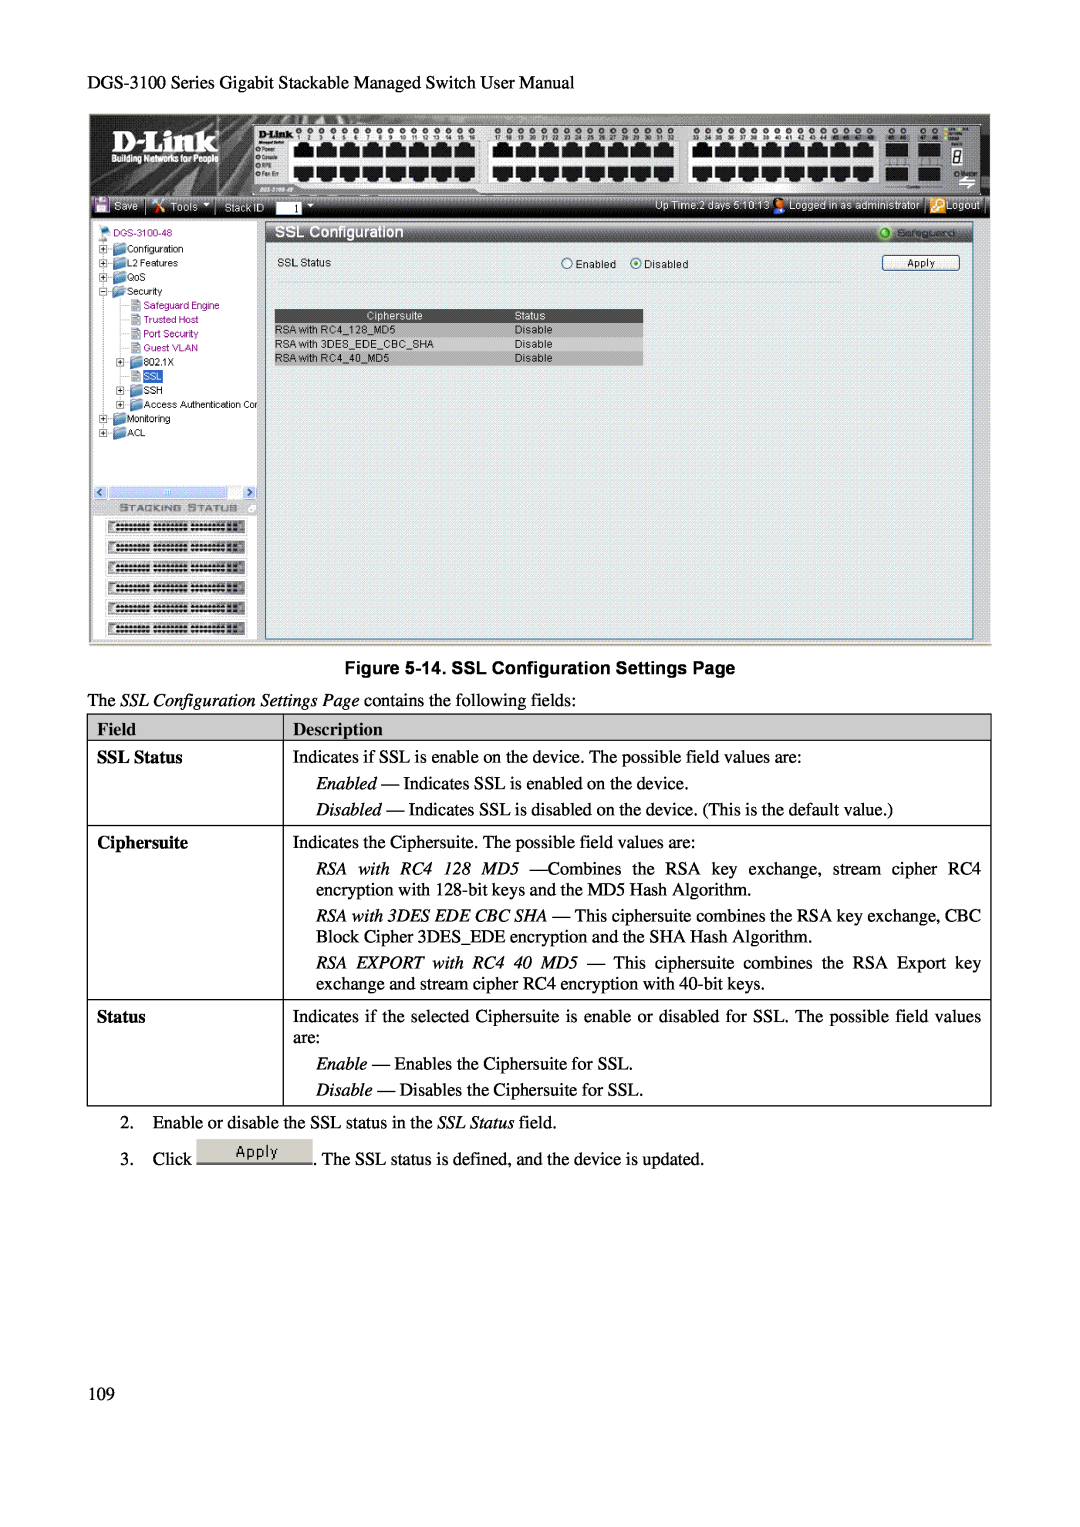 D-Link DGS-3100 user manual 14. SSL Configuration Settings Page, Field SSL Status Ciphersuite Status, Description 